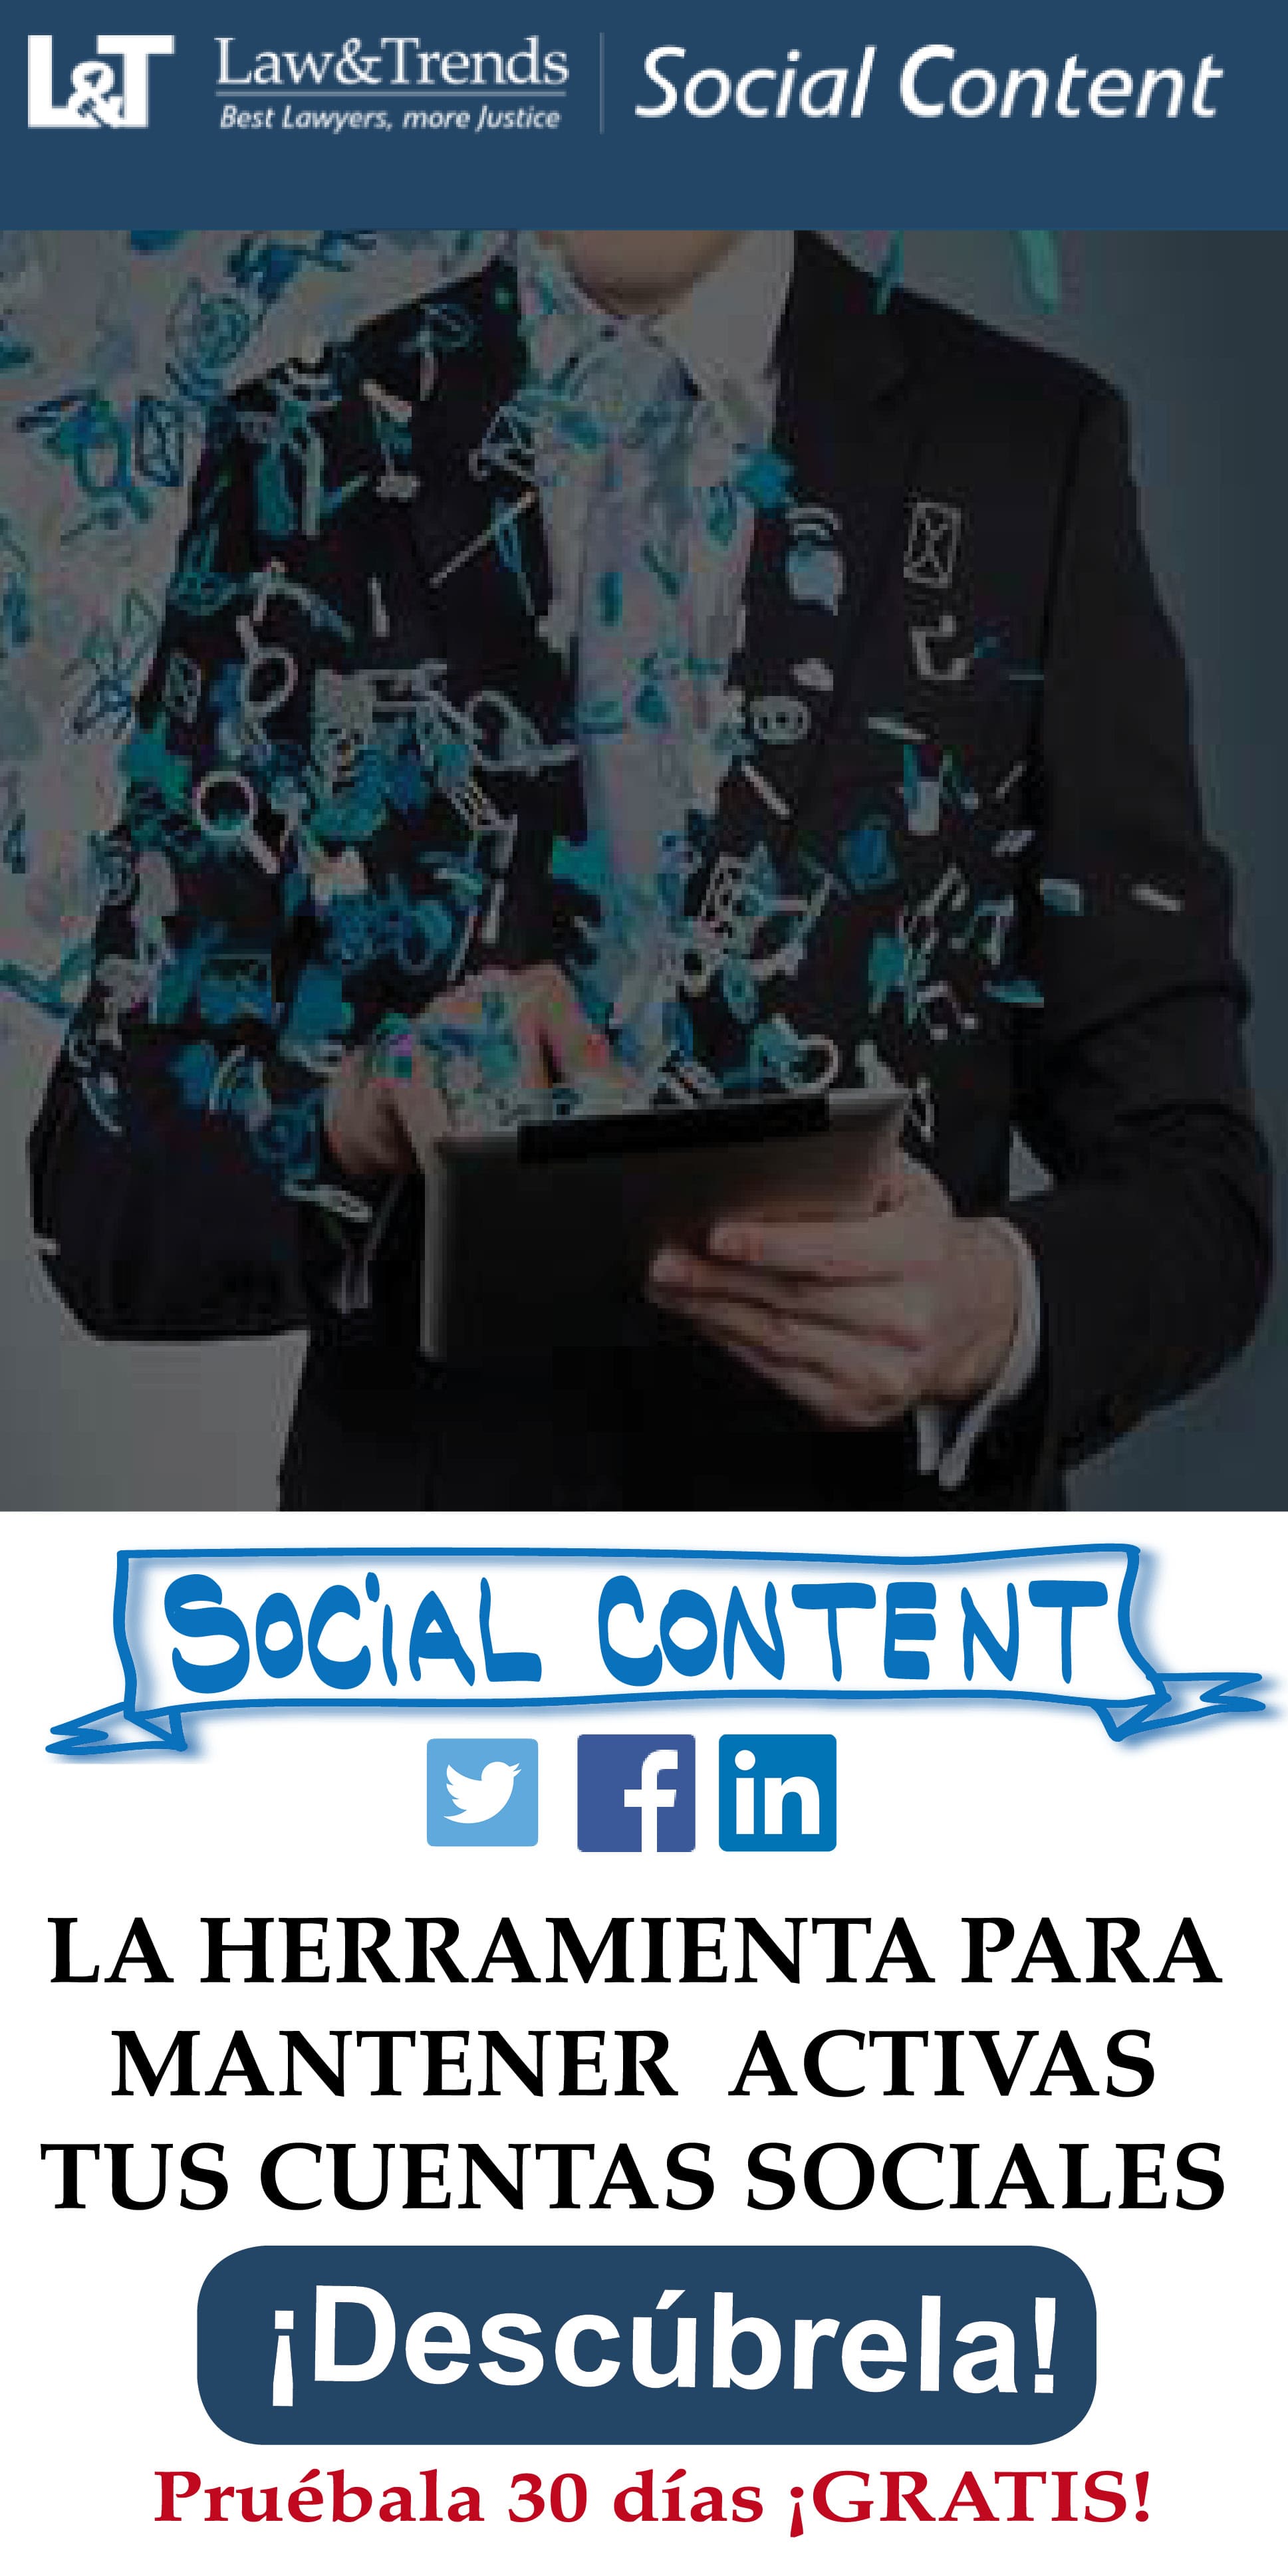 Social content es el servicio de redes sociales de Law&Trends para despachos de abogados y profesionales jur�dicos
